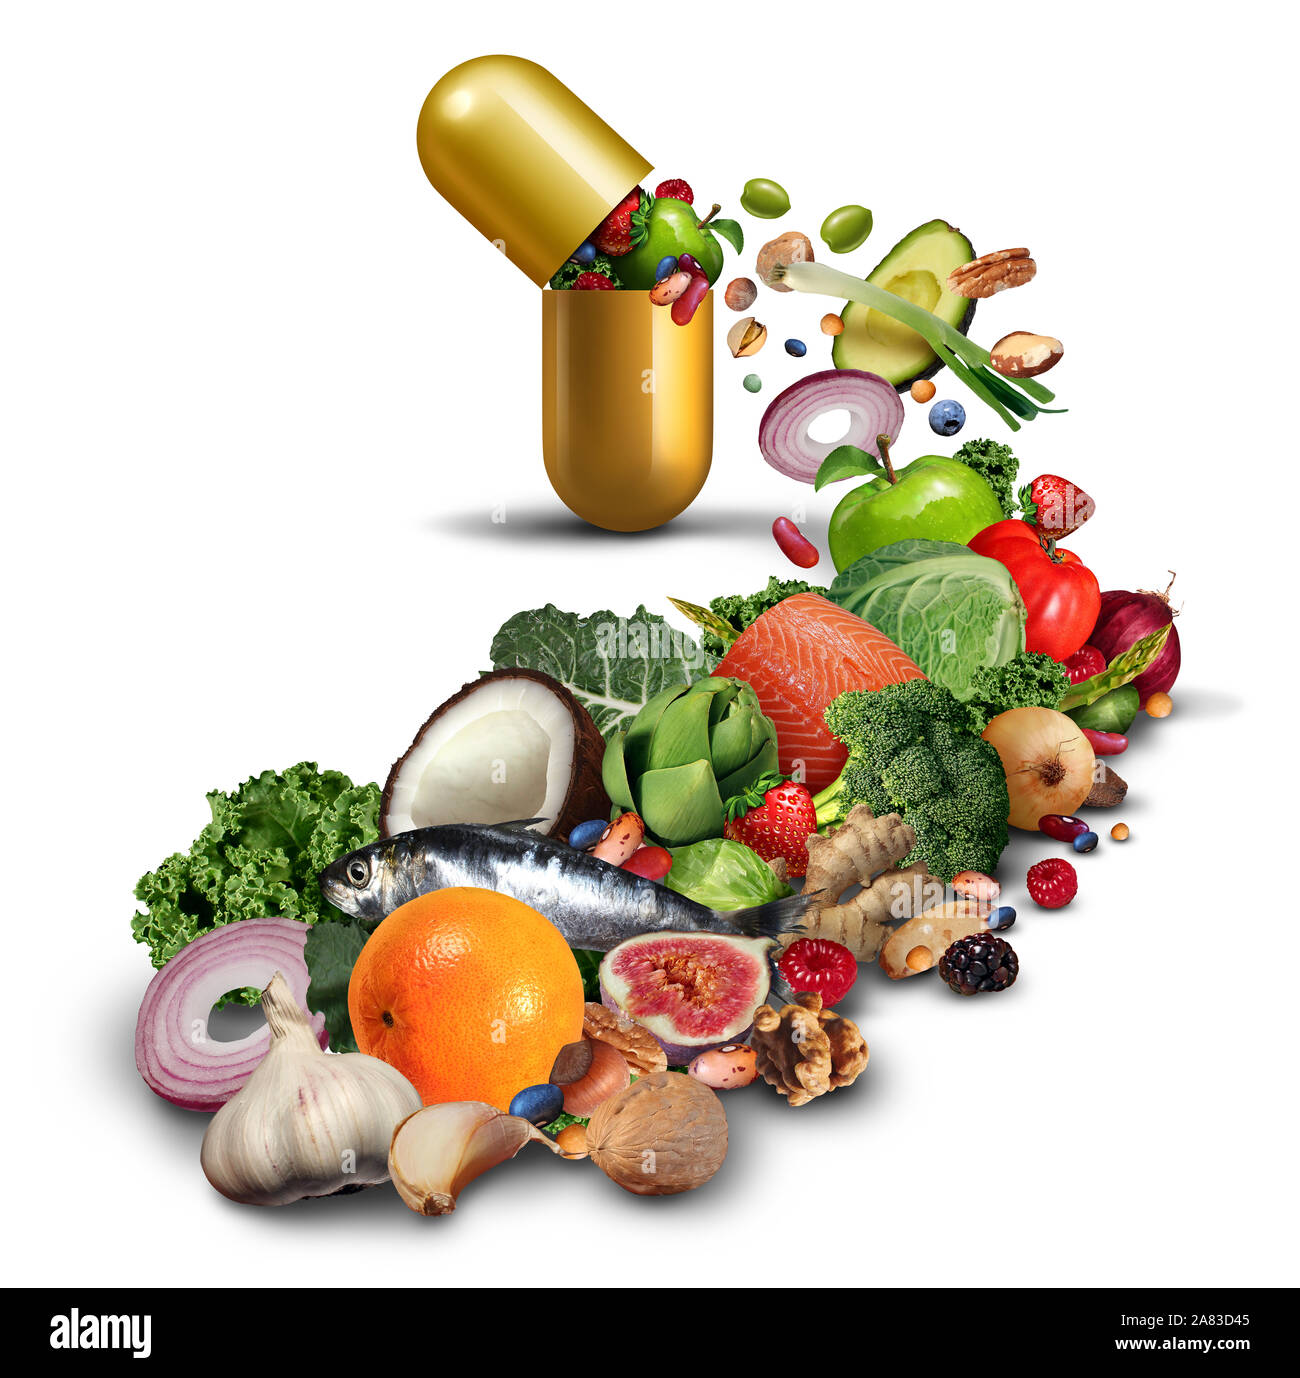 Natürliche Nahrungsergänzung und Vitamine Medikation als offene Pille mit Obst Gemüse Nüsse und Bohnen in einem Nährstoff Produkt als Wellness. Stockfoto